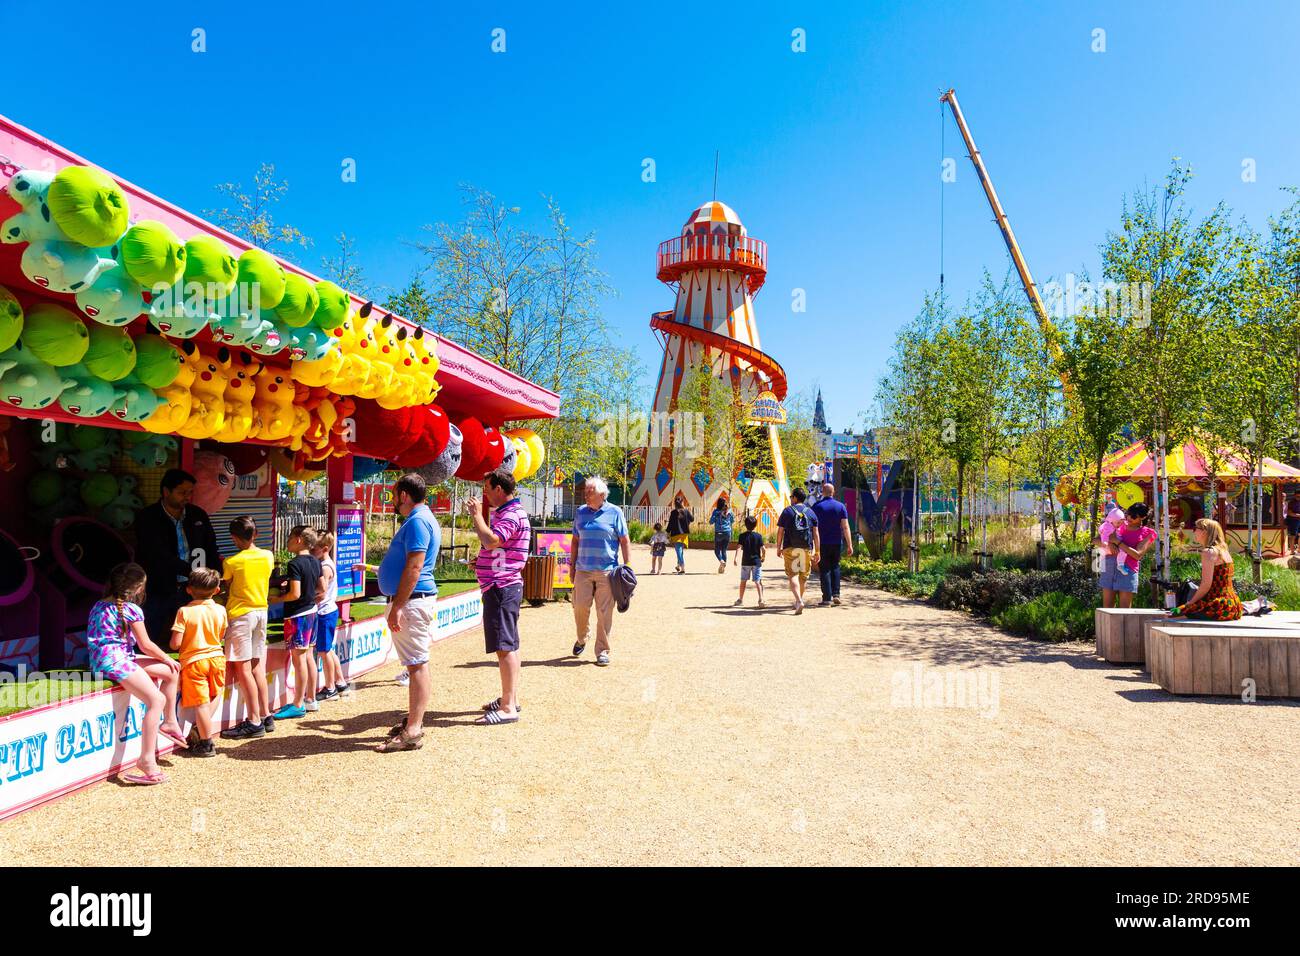 Les gens au parc d'attractions Dreamland et Helter Skelter ride en arrière-plan, Margate, Kent, Angleterre Banque D'Images